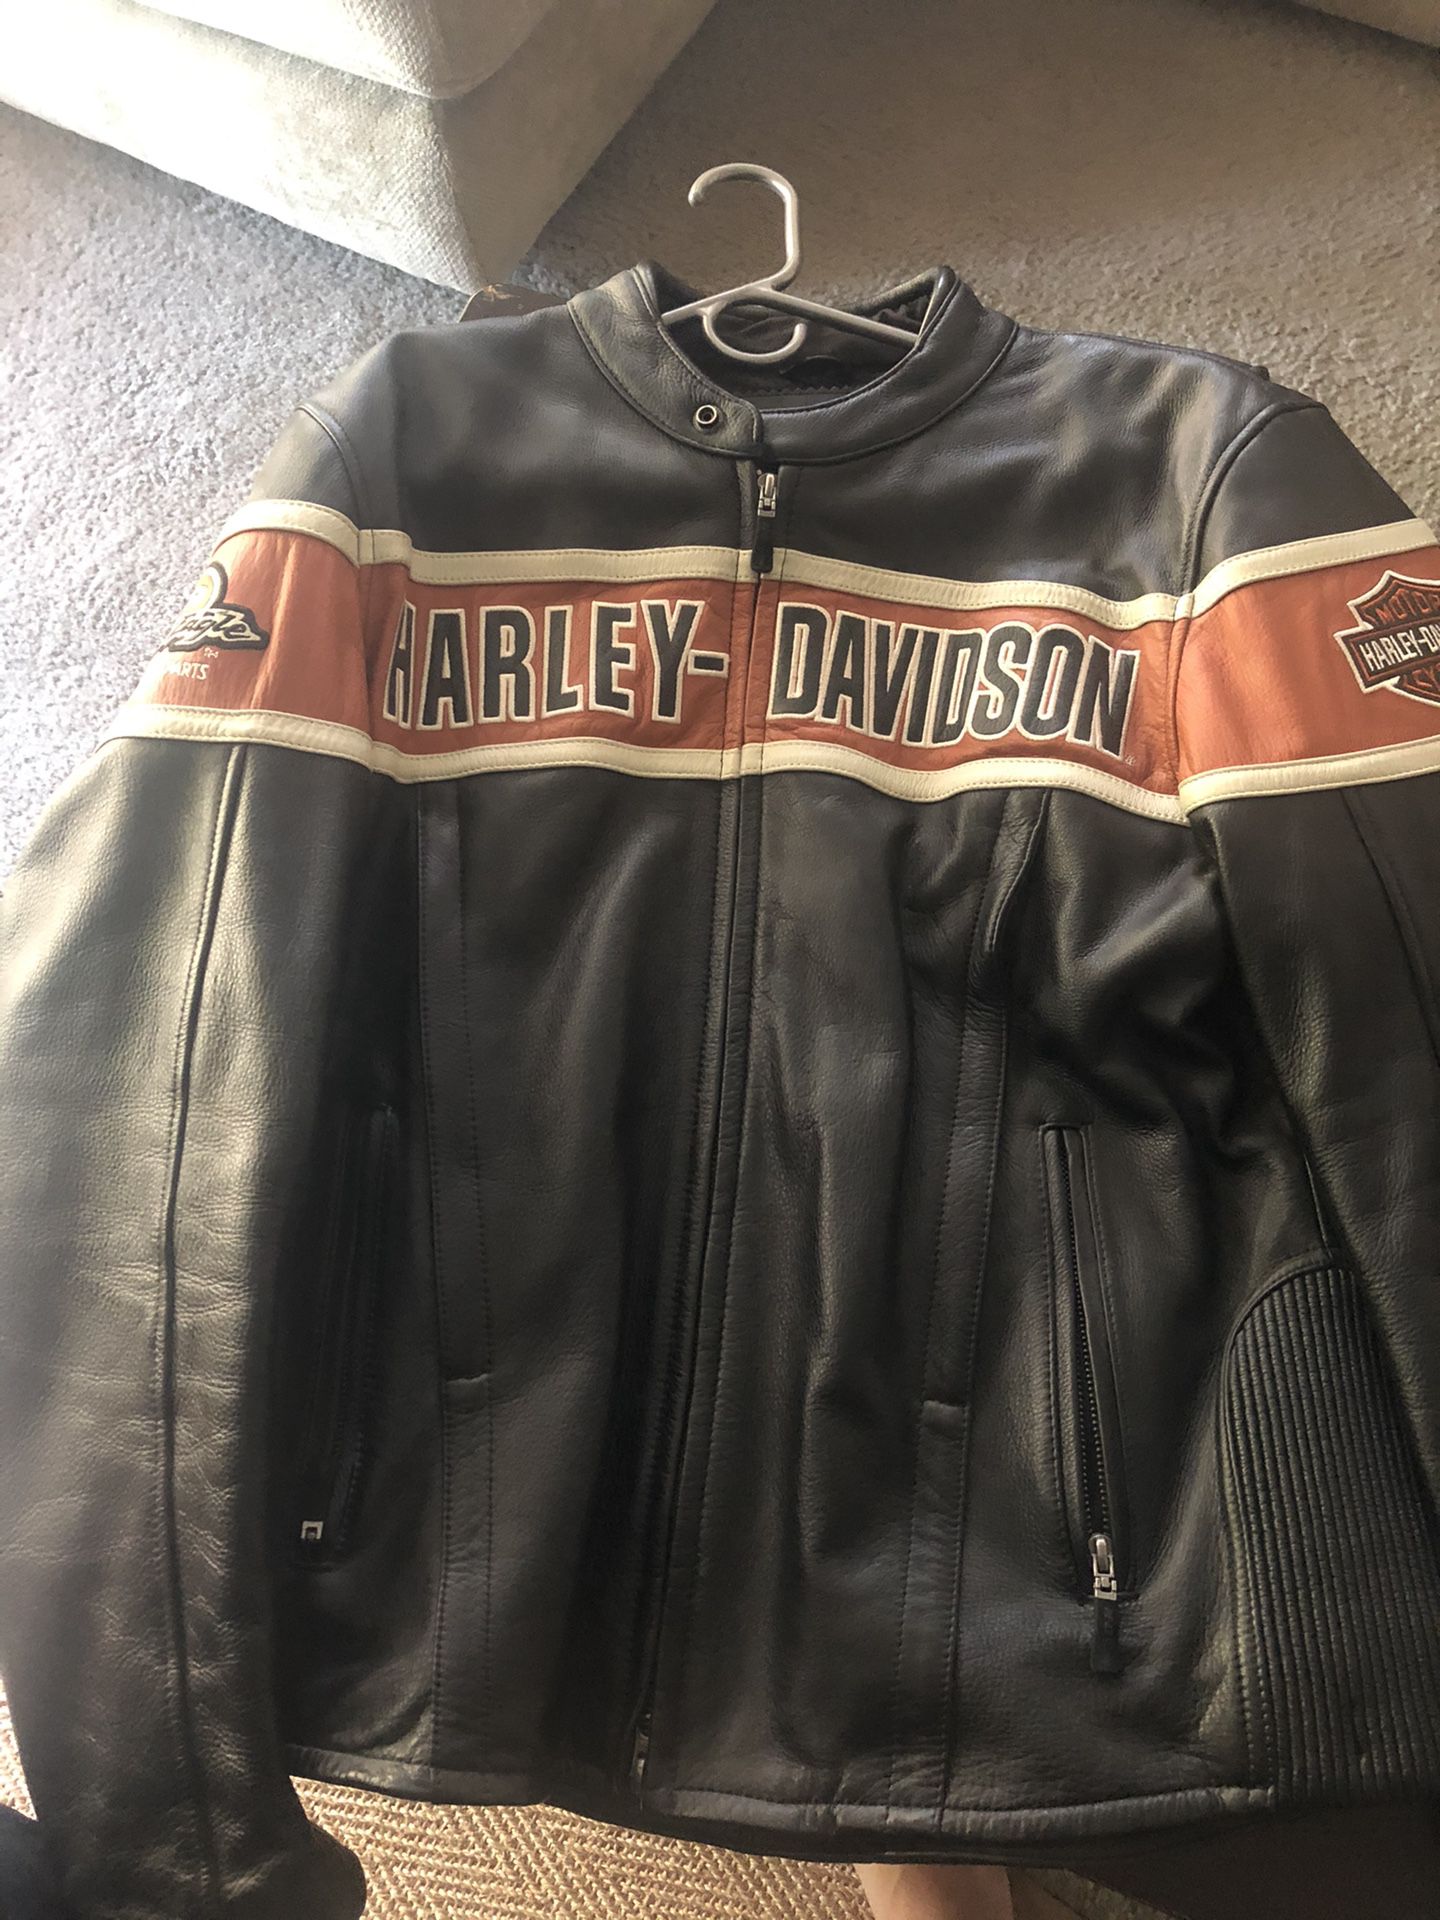 Harley Davidson Men’s leather coat - size L